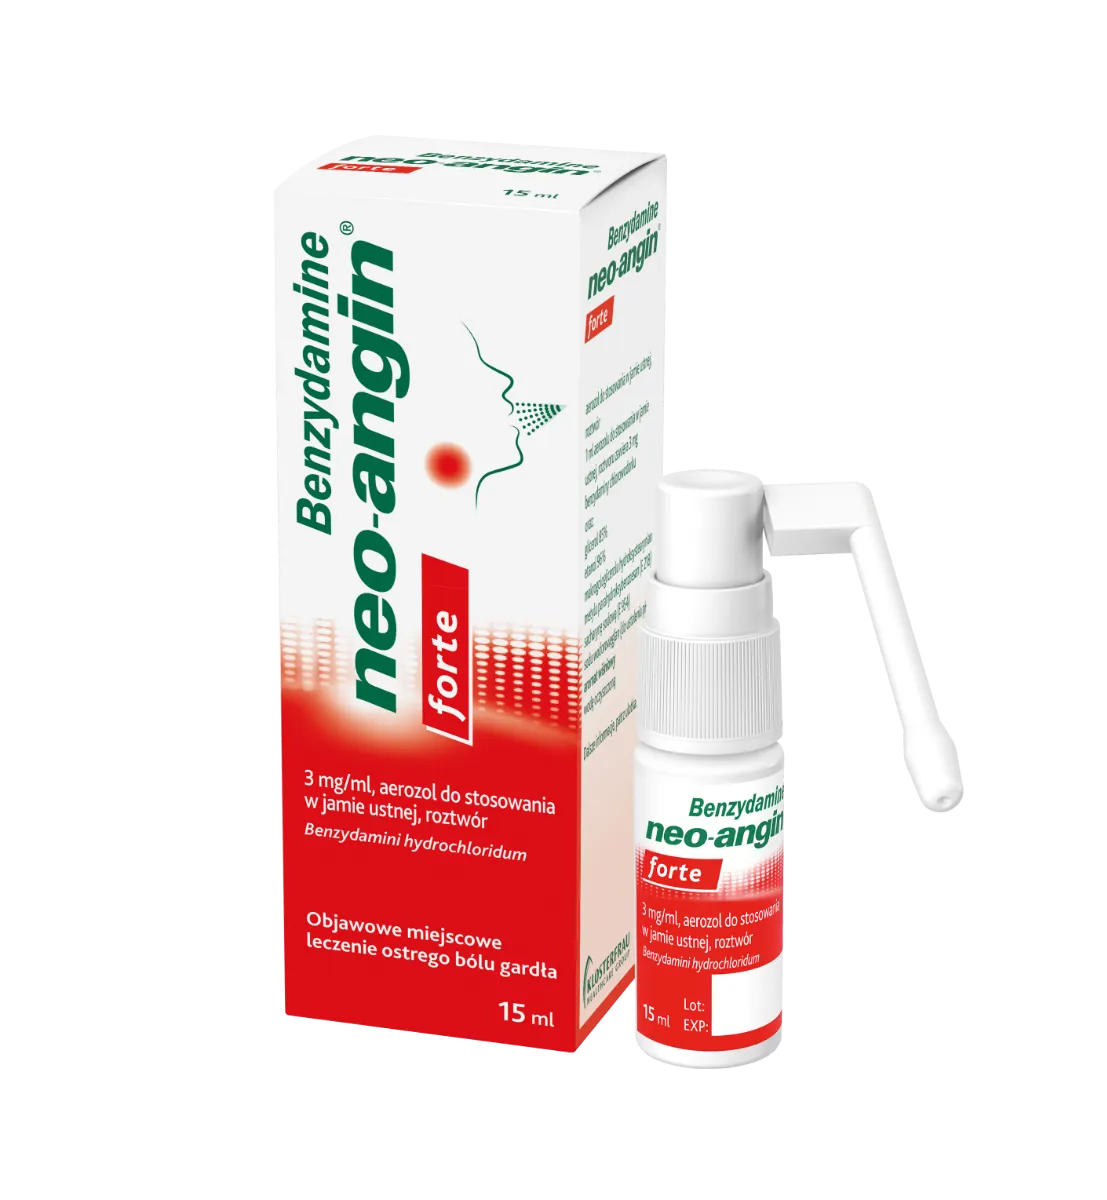 Benzydamine neo-angin forte, 3 mg/ml, aerozol do stosowania w jamie ustnej, roztwór, 15 ml